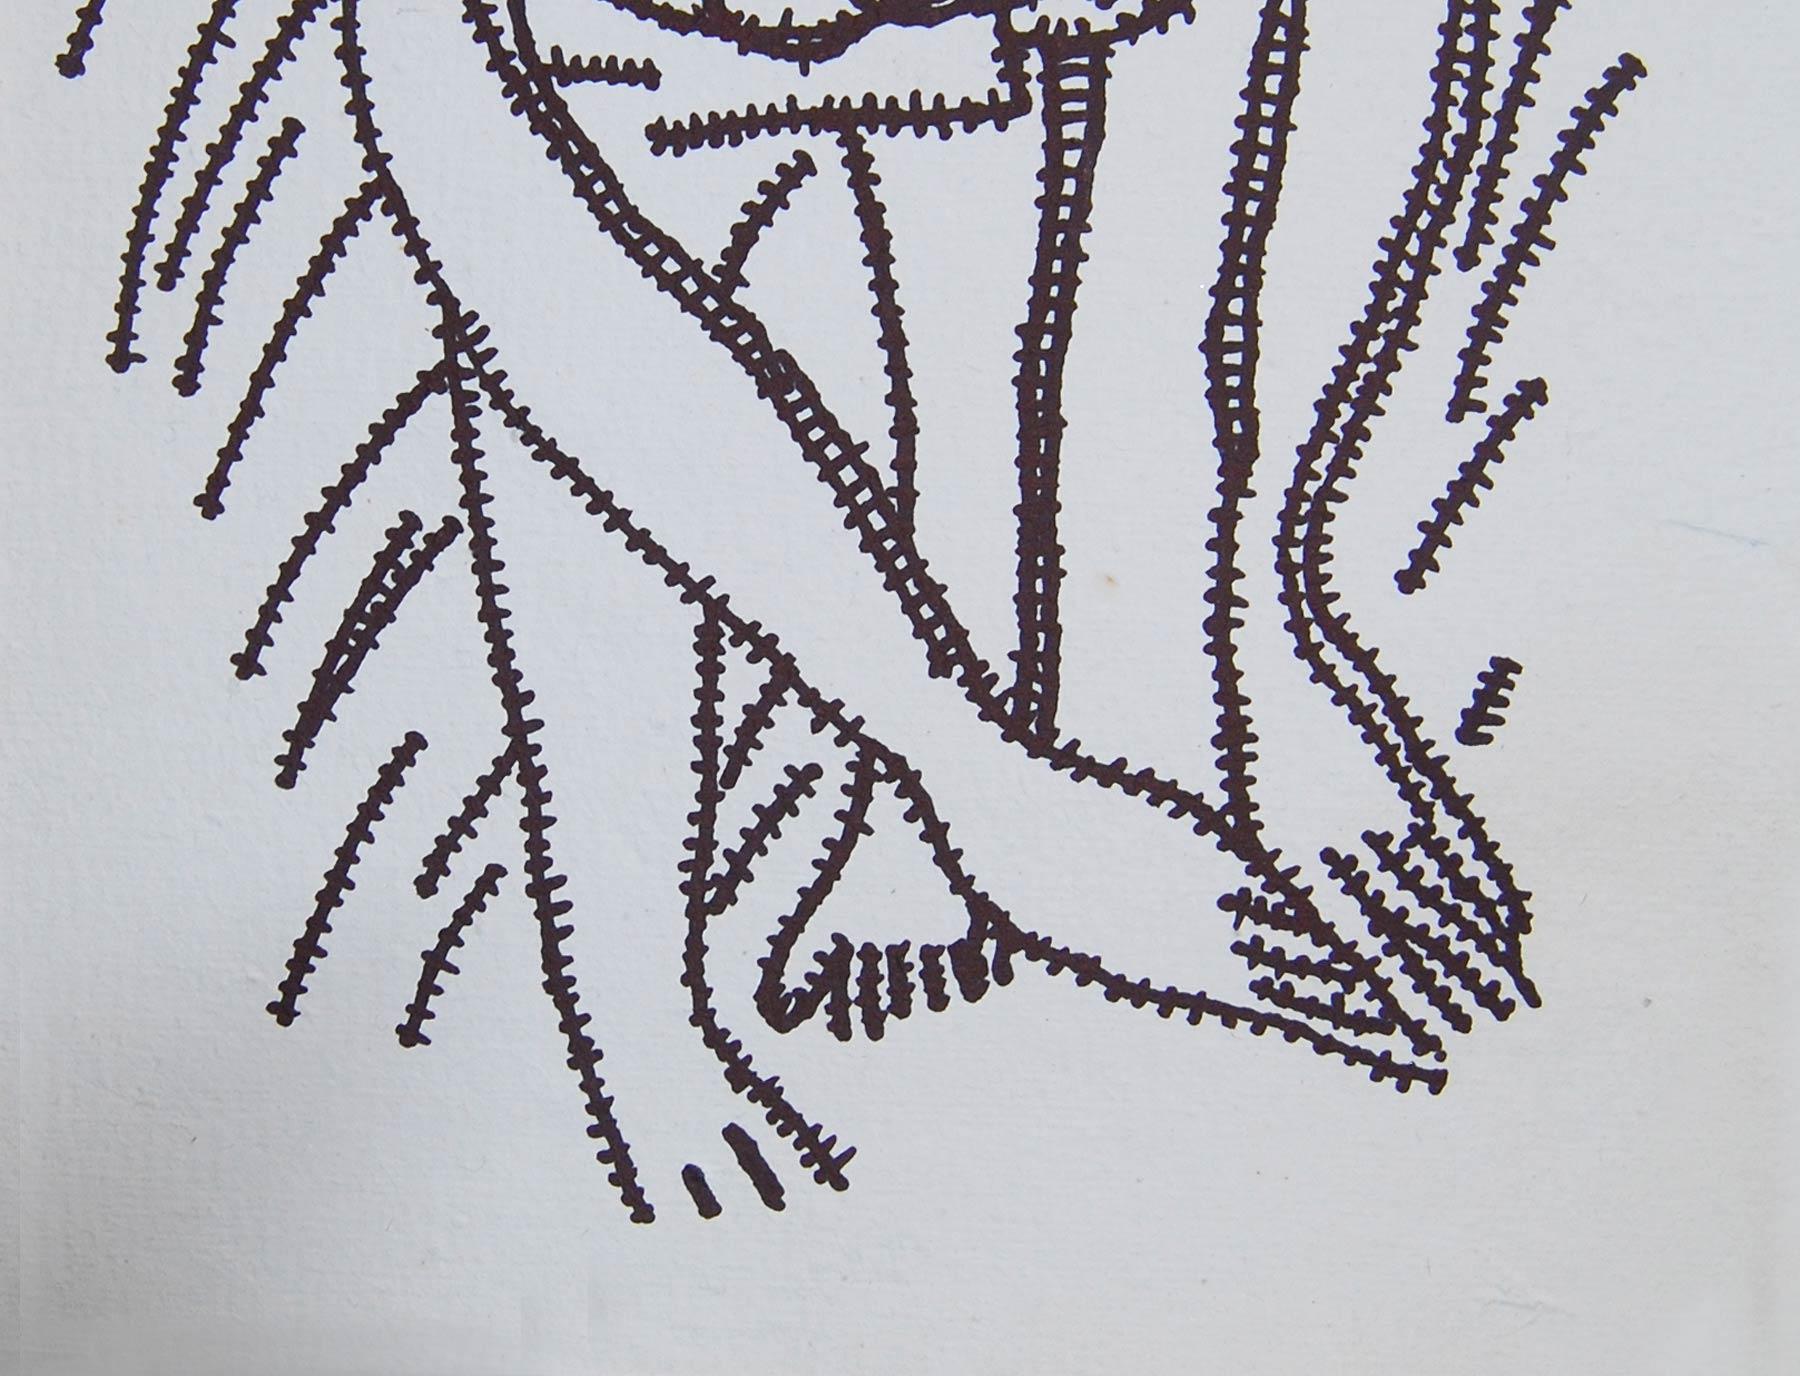 Prakash Karmakar - Ohne Titel - 14,5 x 11 Zoll (ungerahmte Größe)  
Tinte auf Papier  
Inklusive Versand in Rollenform.          

Stil : Der legendäre Meisterkünstler Lt. Prakash Karmakar aus Bengalen war allein für die bengalische Kunstbewegung